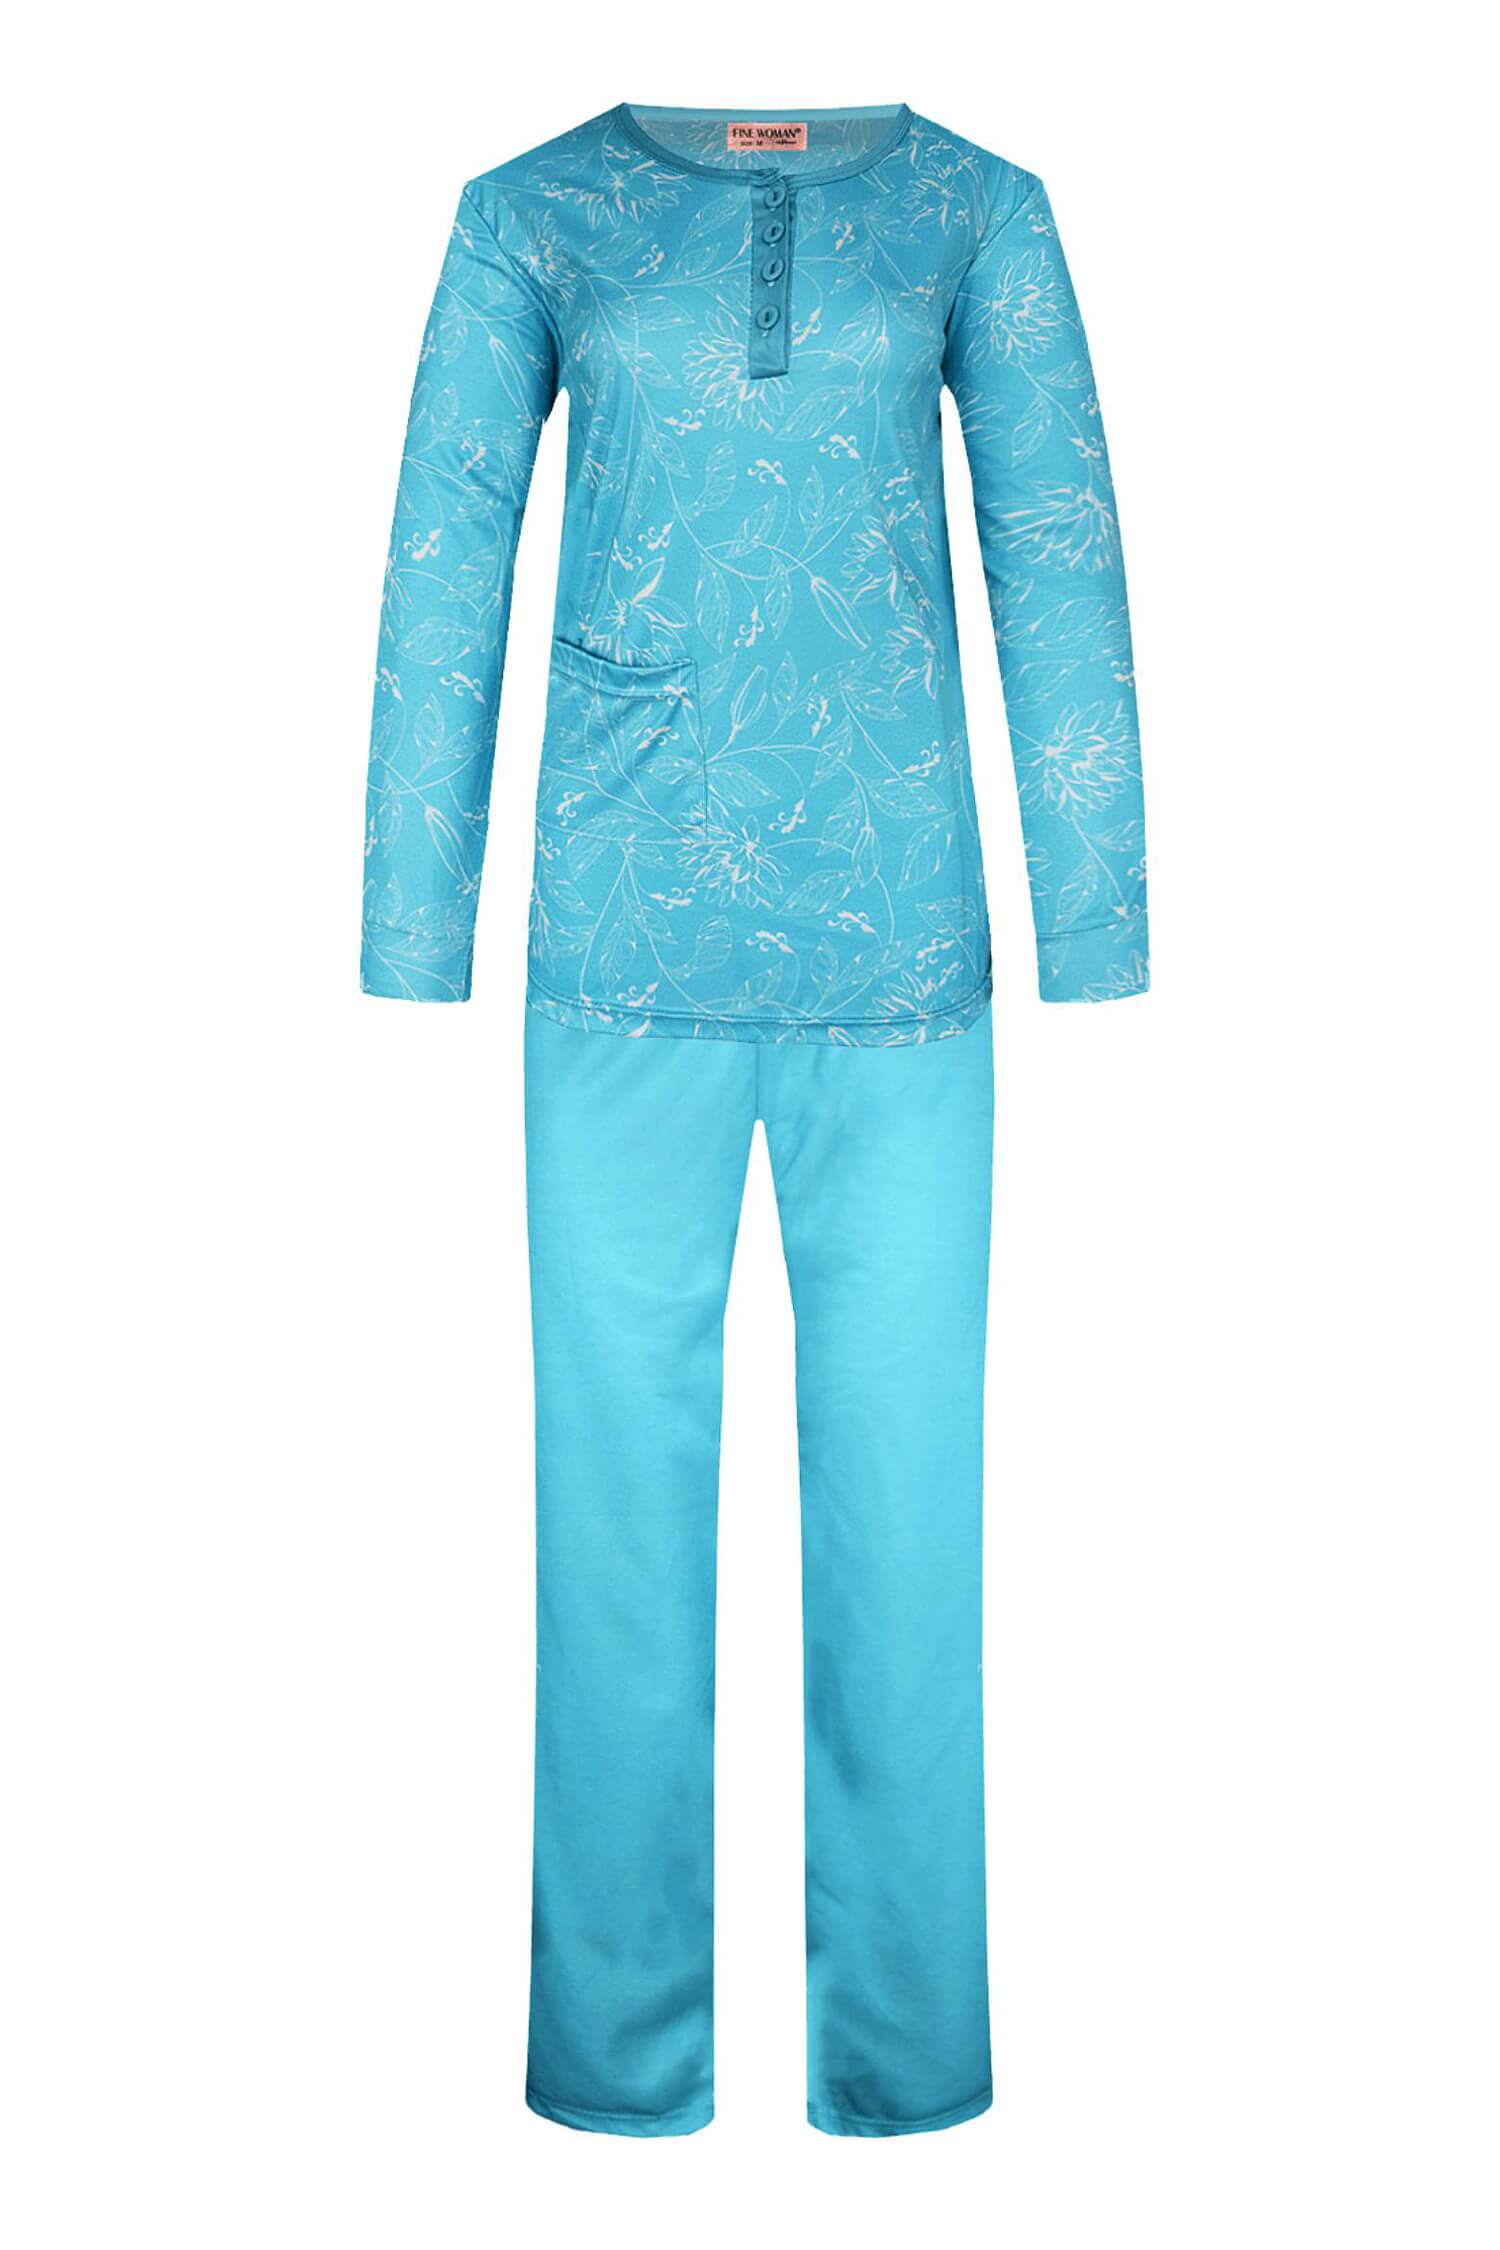 Sára dámské pyžamo dlouhý rukáv 2299 XXL světle modrá